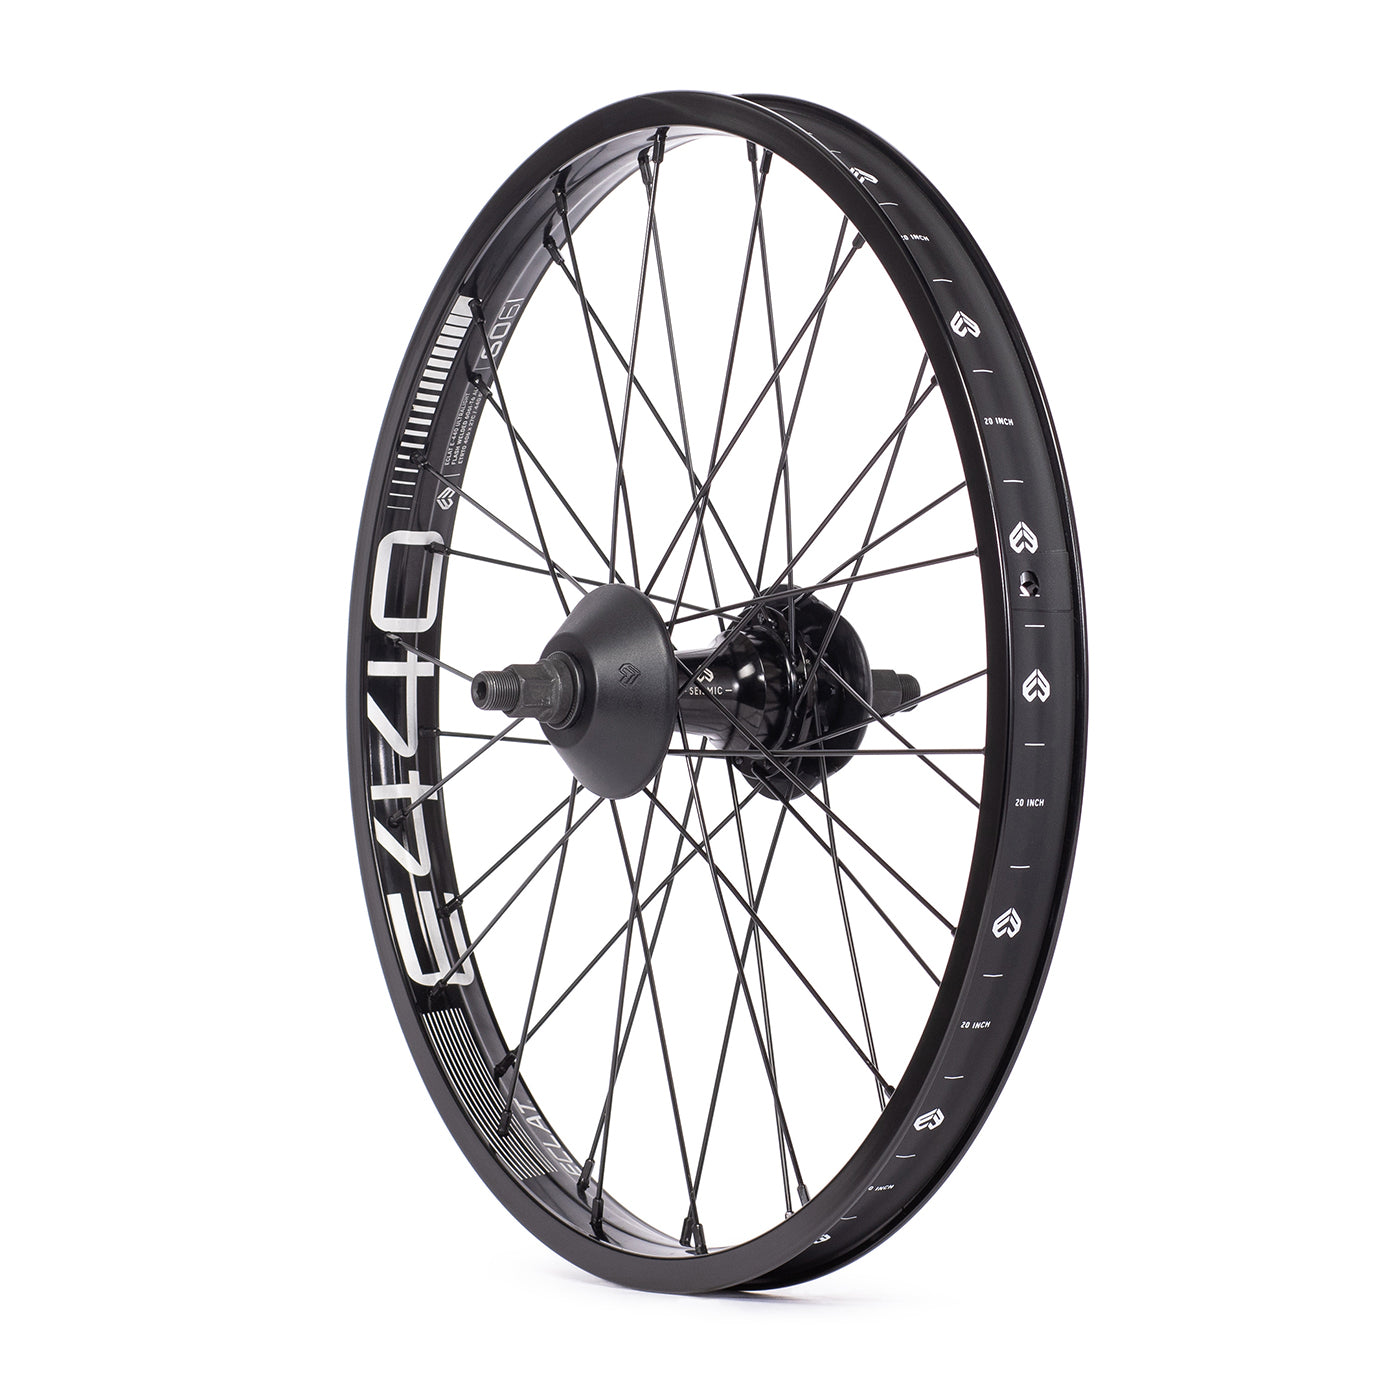 BMX Bike Wheels & Rims Supplies: Hubs, Tires, Pegs, Brakes & more 